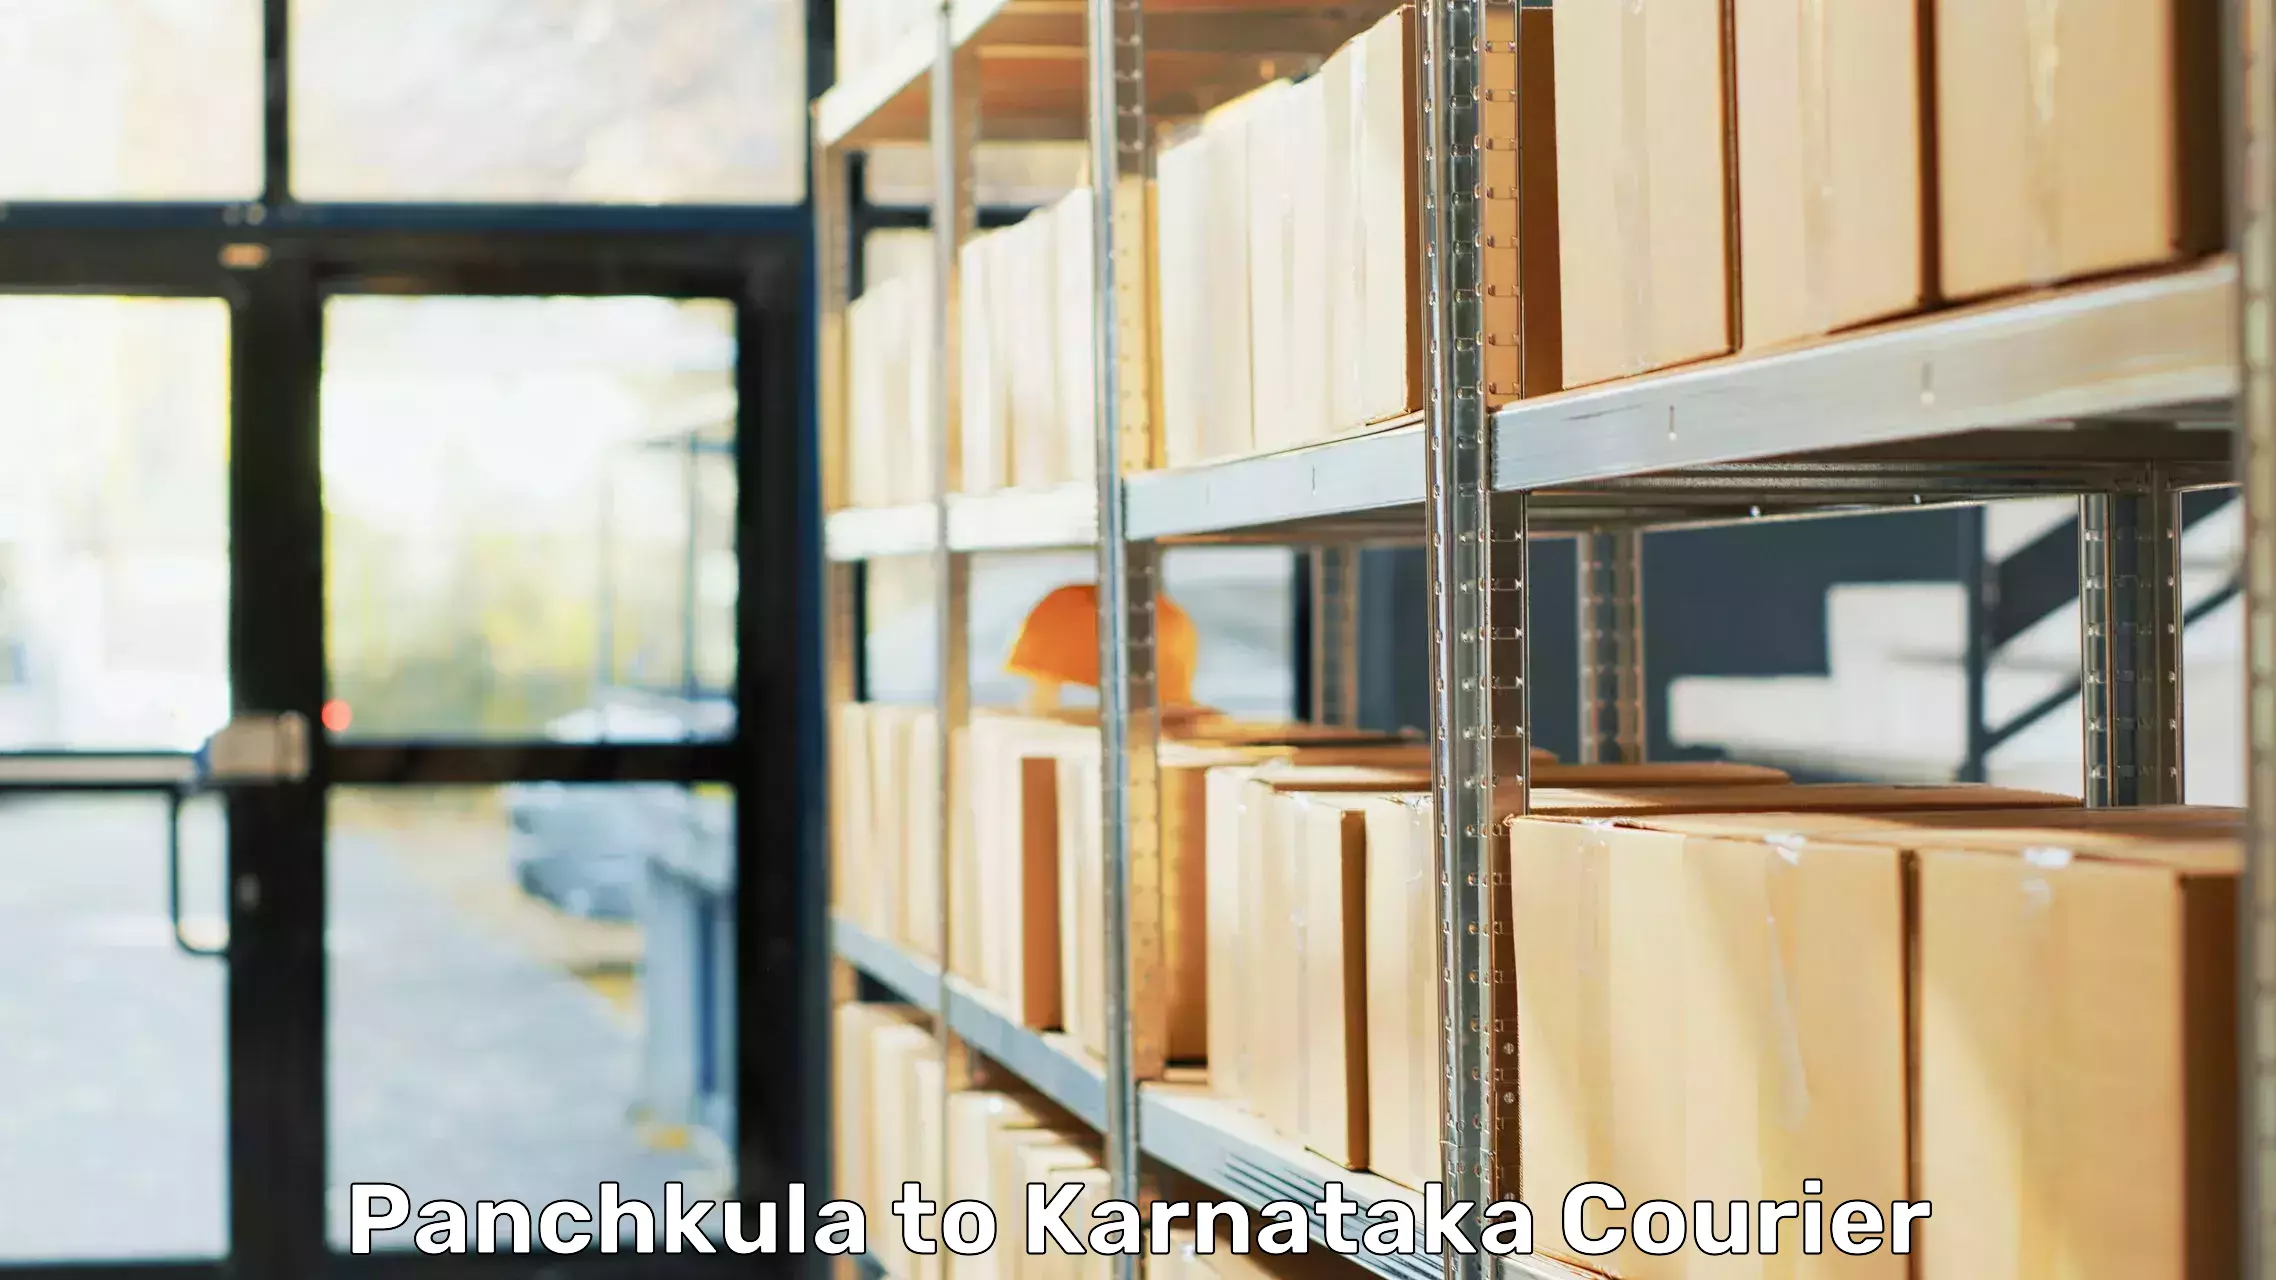 Reliable furniture transport Panchkula to Kanjarakatte